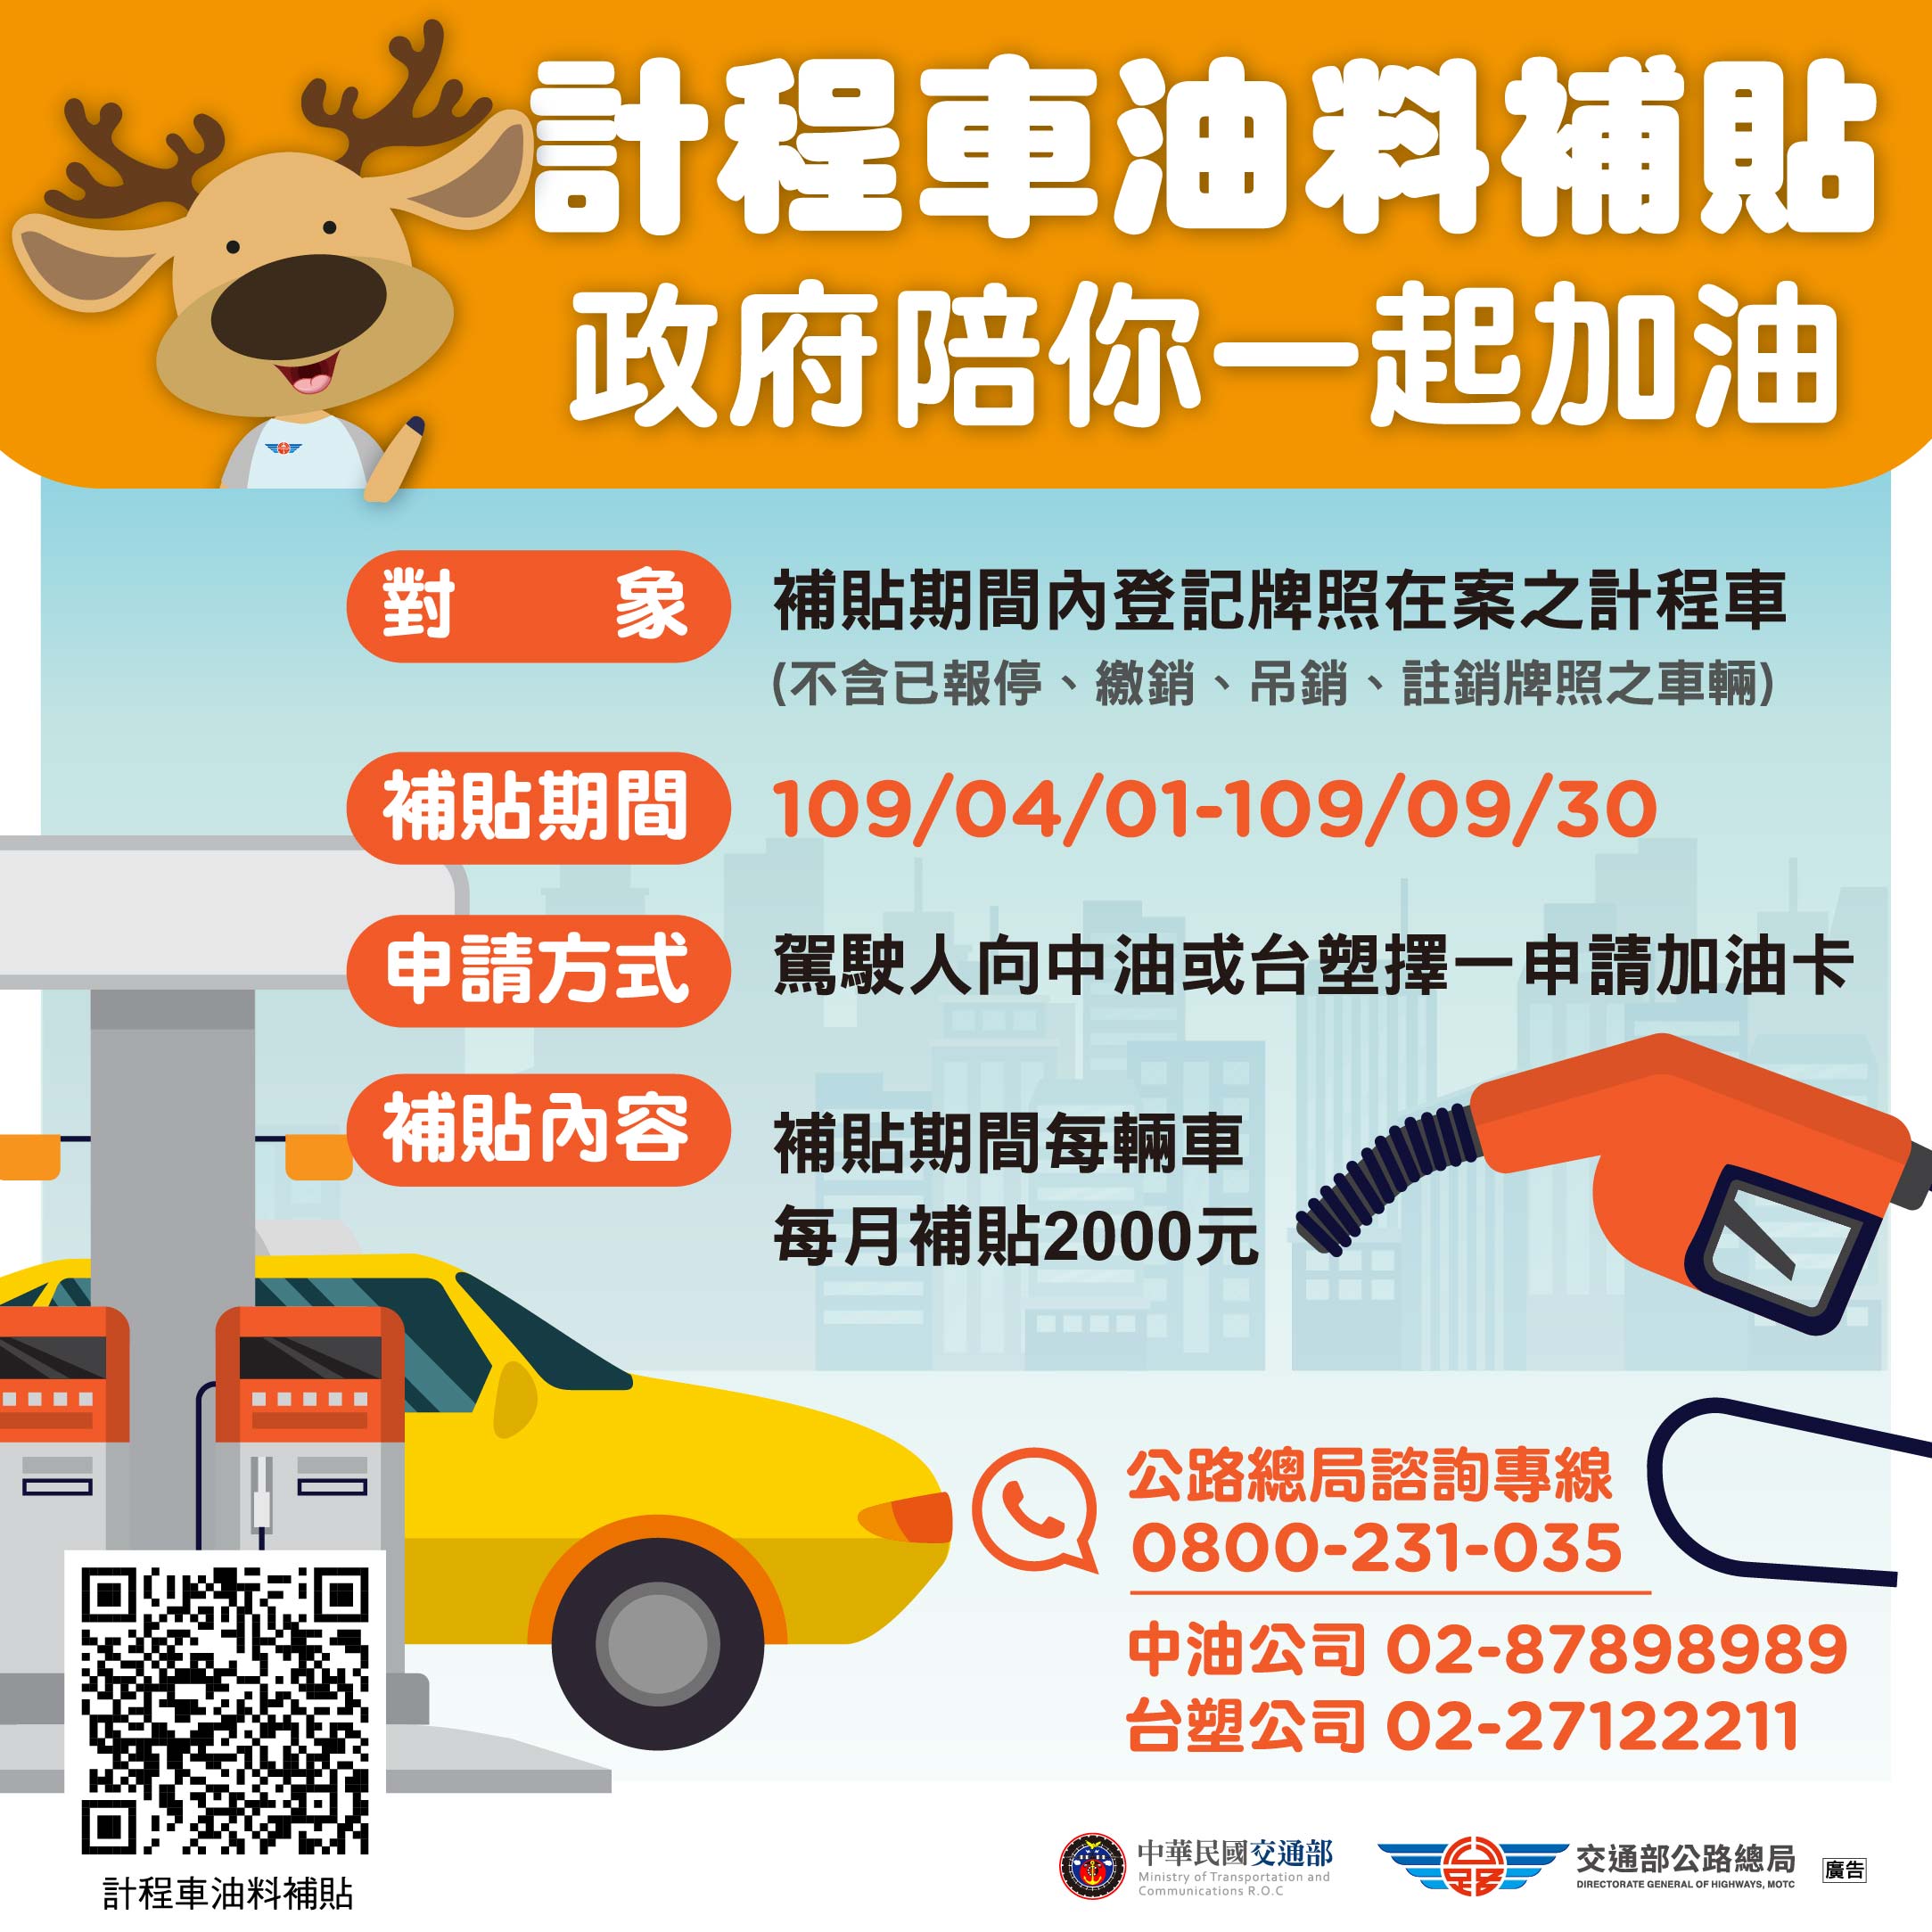 交通部補助計程車油料補貼 1週內已有逾7萬名司機完成申請使用 交通新聞稿 中華民國交通部